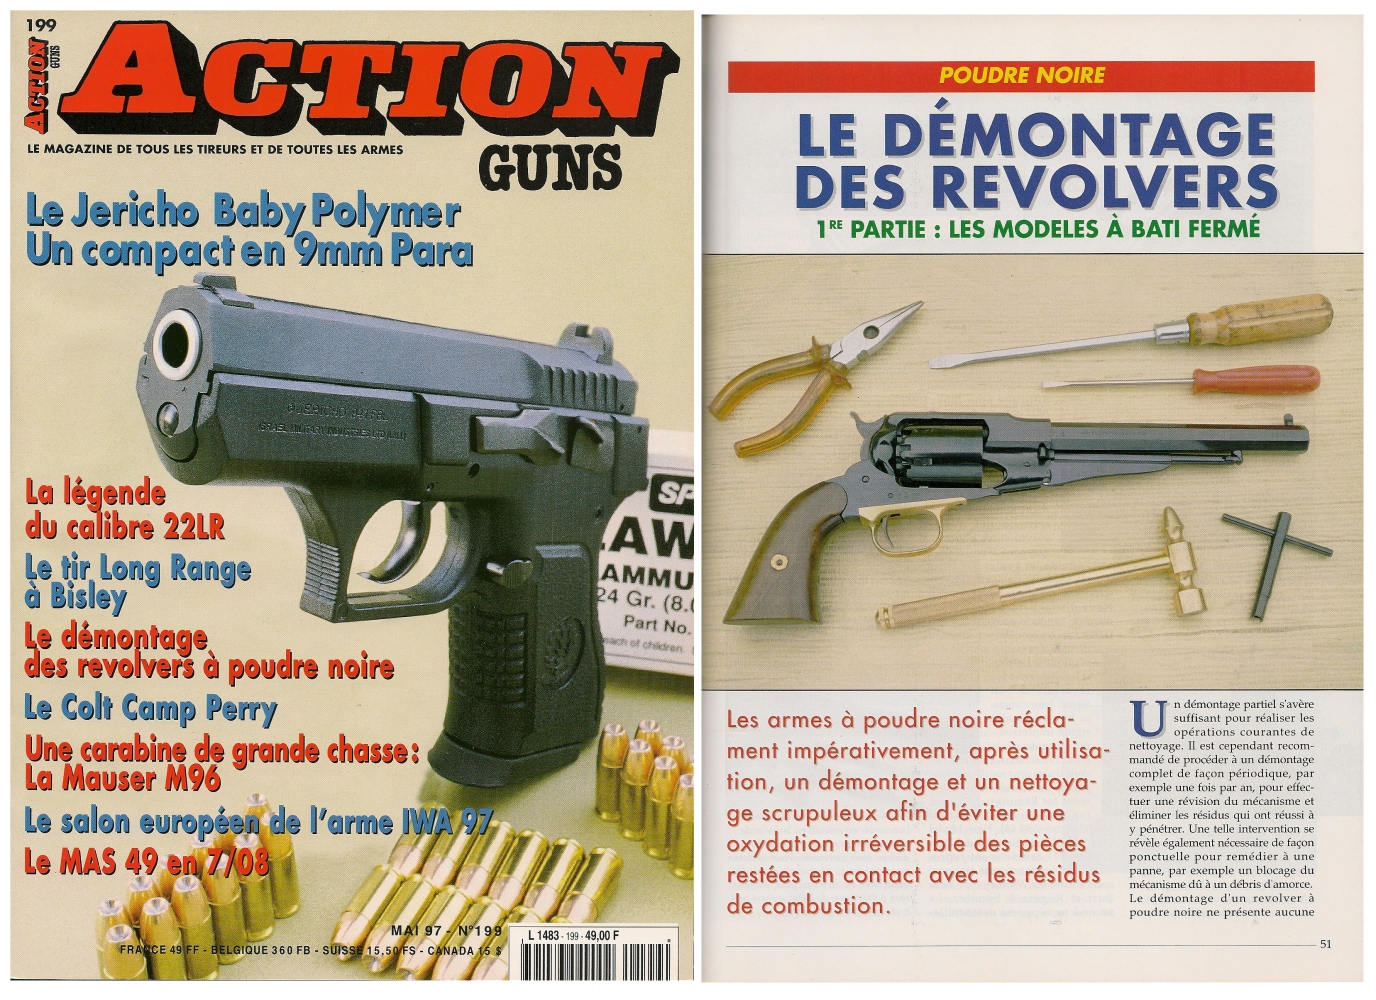 La première partie de cet article, consacrée aux revolvers à bâti fermé, a été publiée sur 5 pages dans le magazine Action Guns n° 199 (mai 1997).